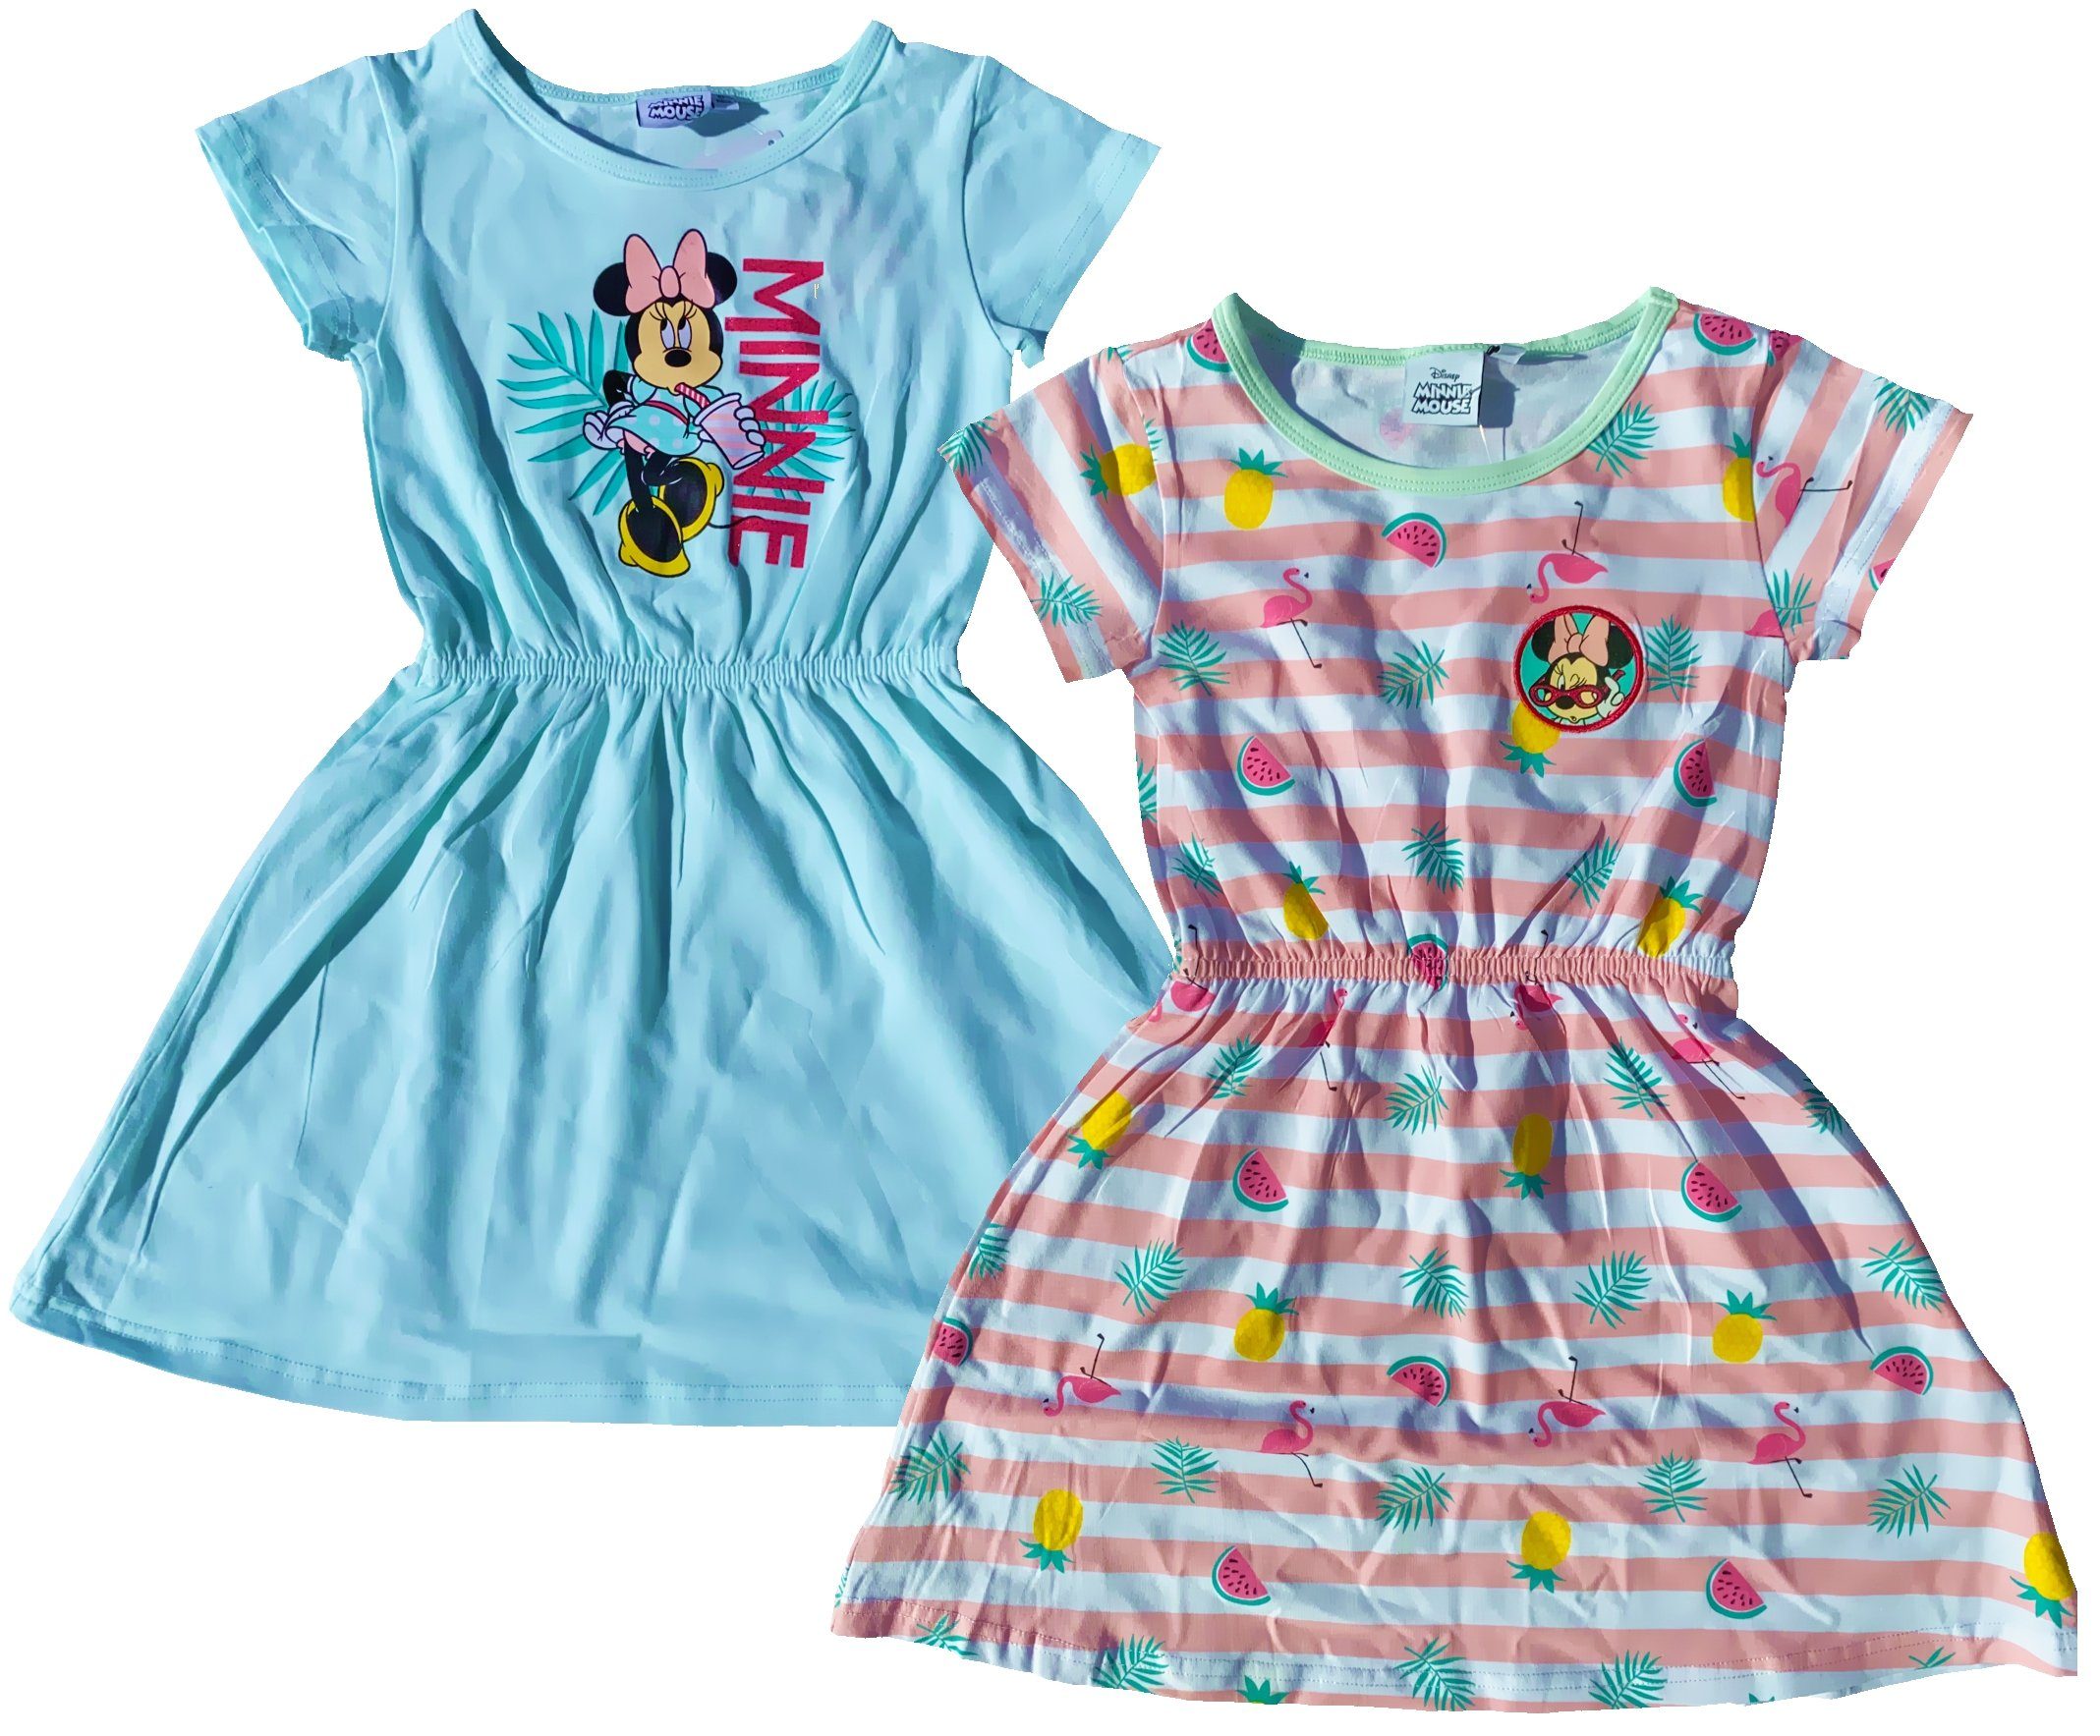 Disney Minnie Mouse Sommerkleid 2x MINNIE MOUSE Kleid Mädchenkleid  Sommerkleid Mini Maus Türkis und gestreift Mädchen 2 3 4 5 6 7 8 9 10 Jahre  Gr. 98 104 110 116 128